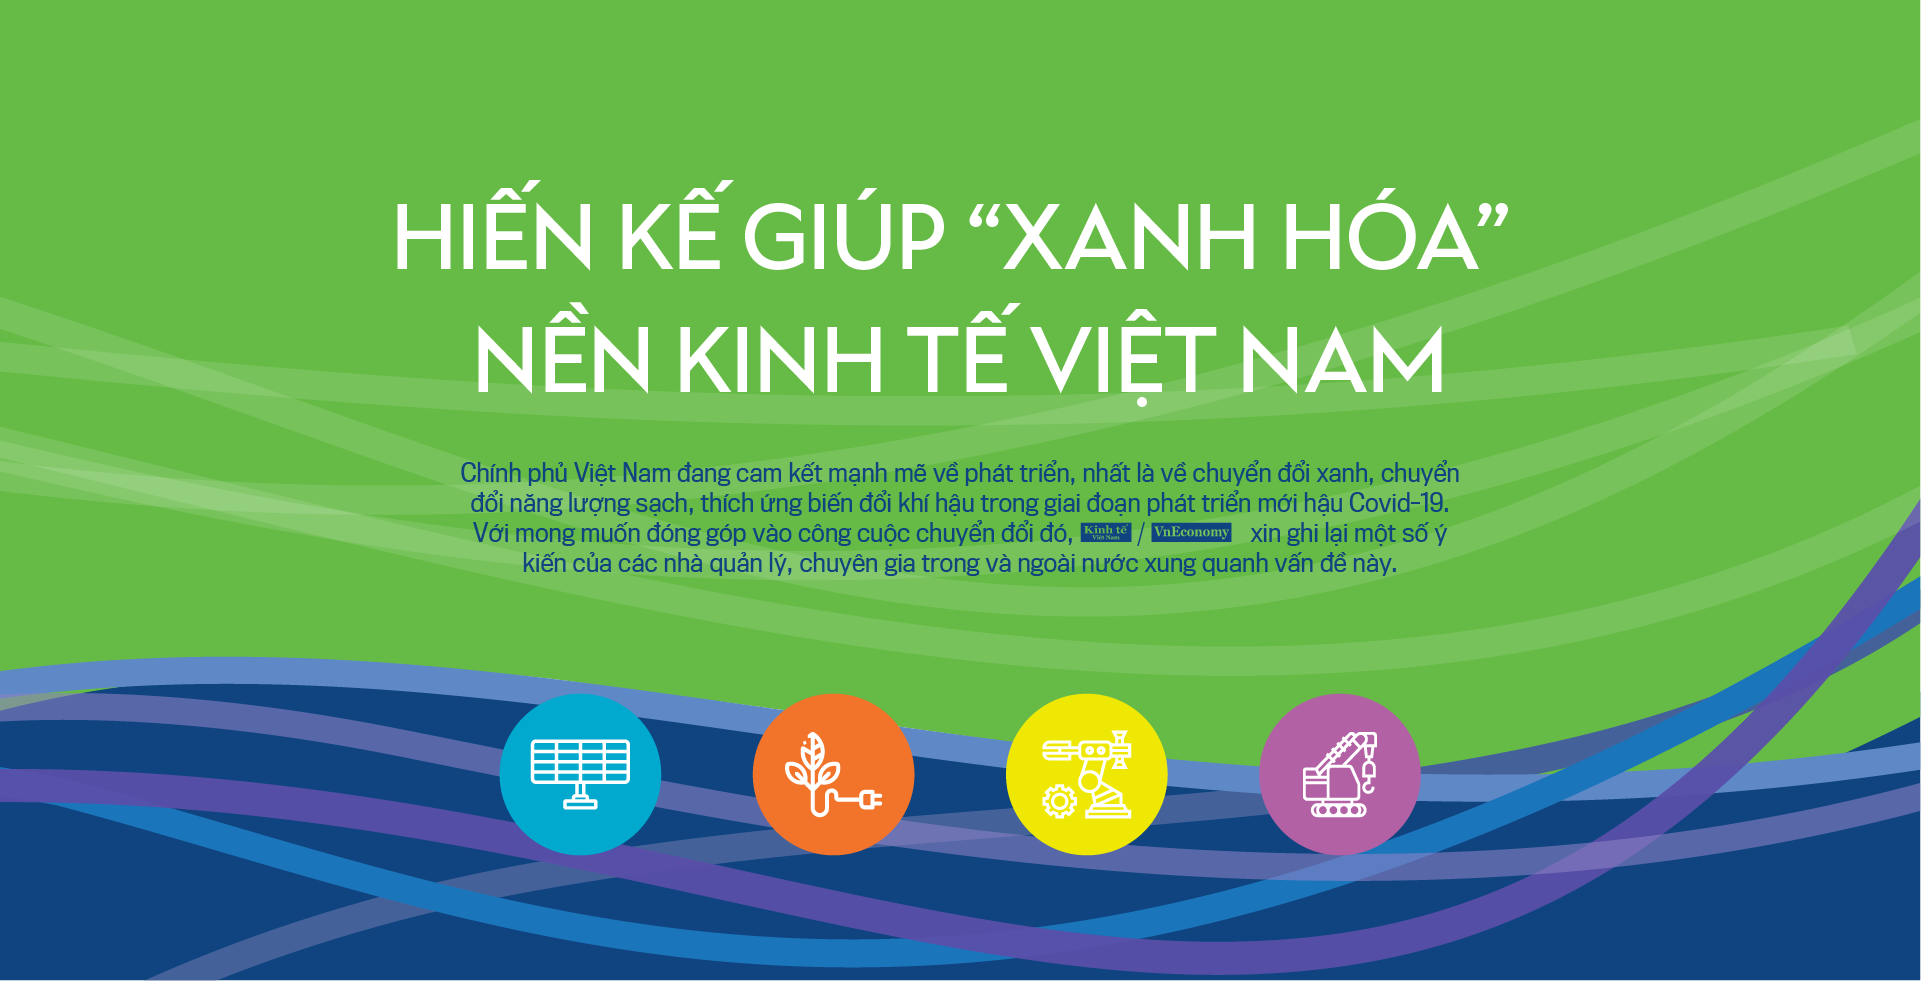 Hiến kế giúp “xanh hóa” nền kinh tế Việt Nam - Ảnh 1